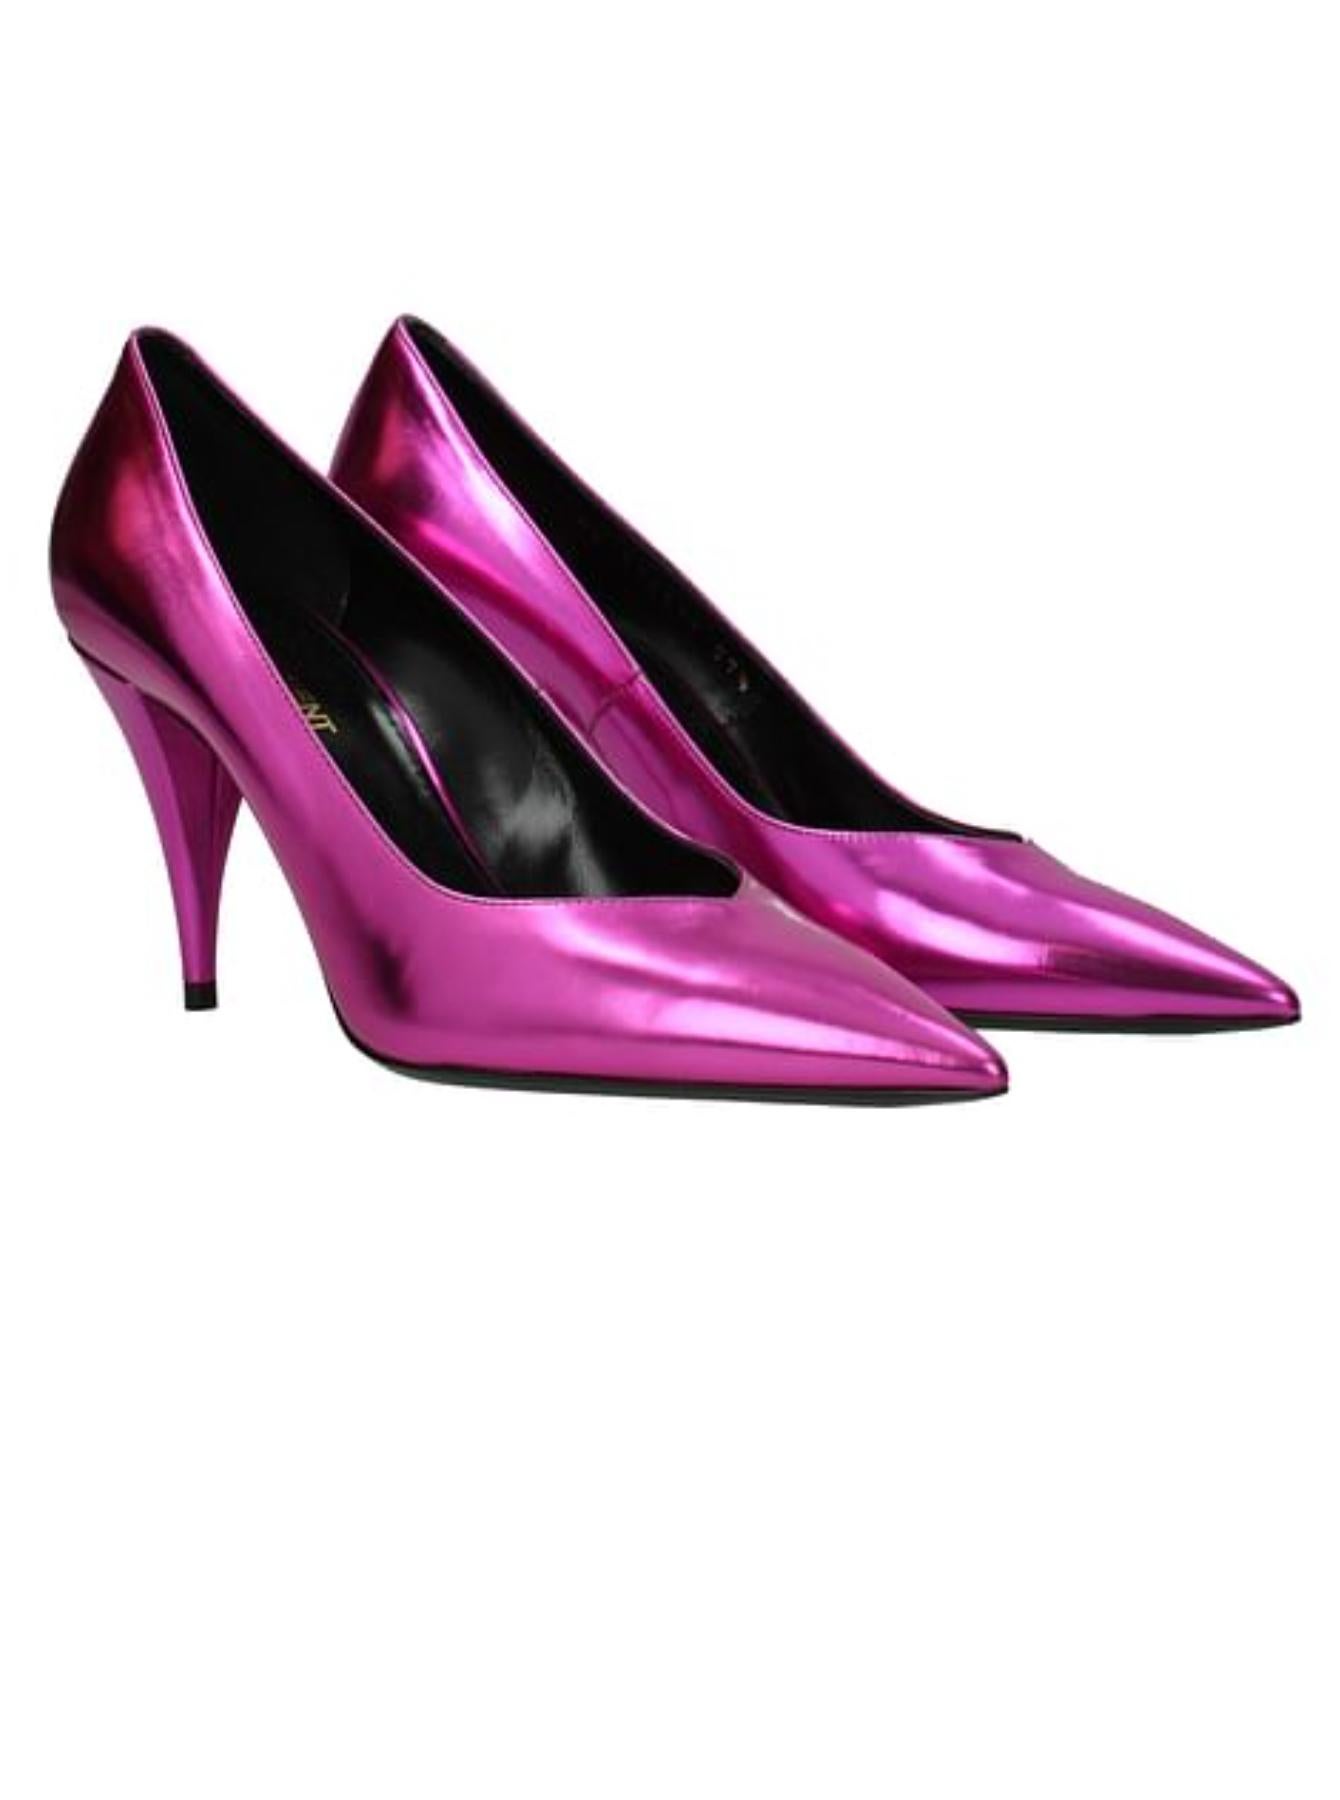 metallic pink heels